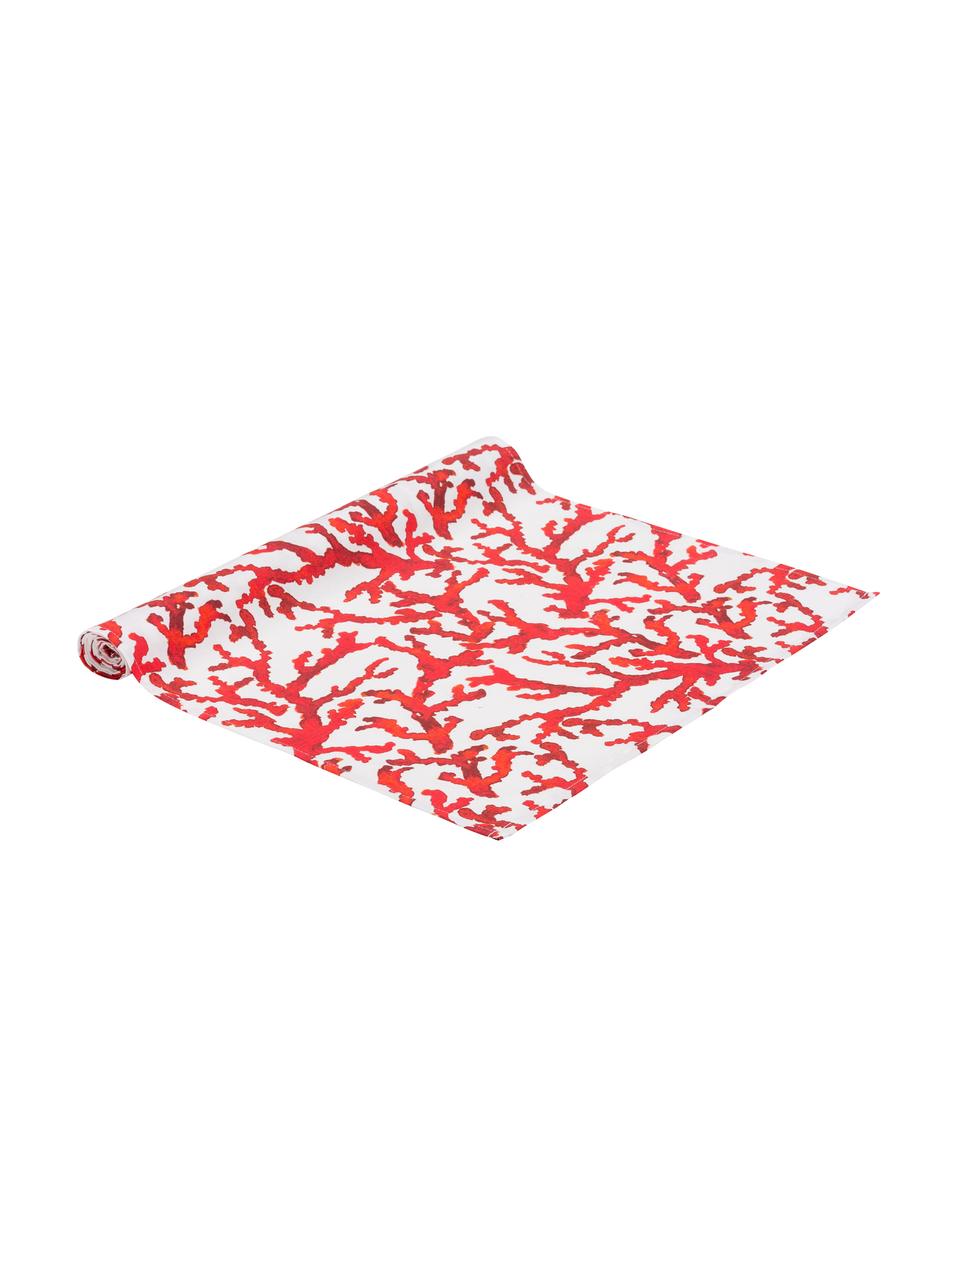 Baumwoll-Tischläufer Estran mit Korallenmotiv, 2 Stück, Baumwolle, Rot, Weiß, 50 x 160 cm